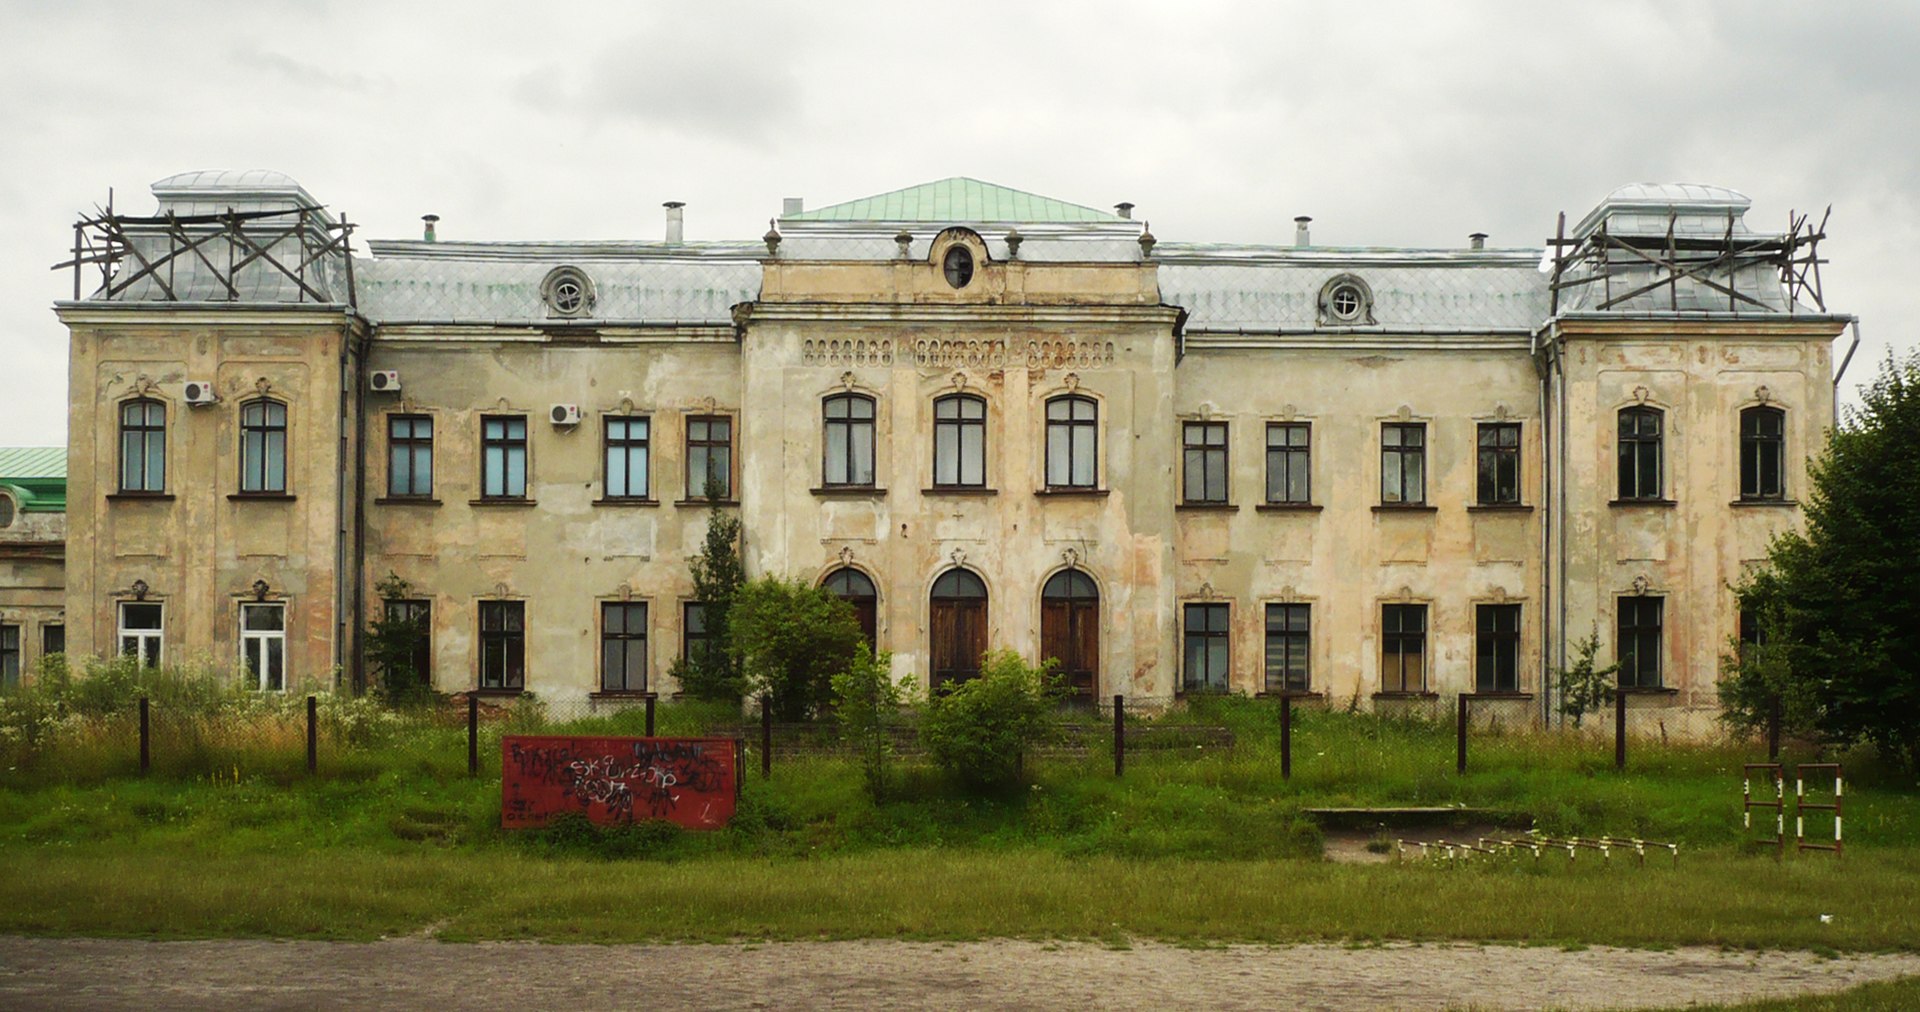 Бывший дворец Потоцких, с 1989 года — музей религии (реставрируется после пожара)